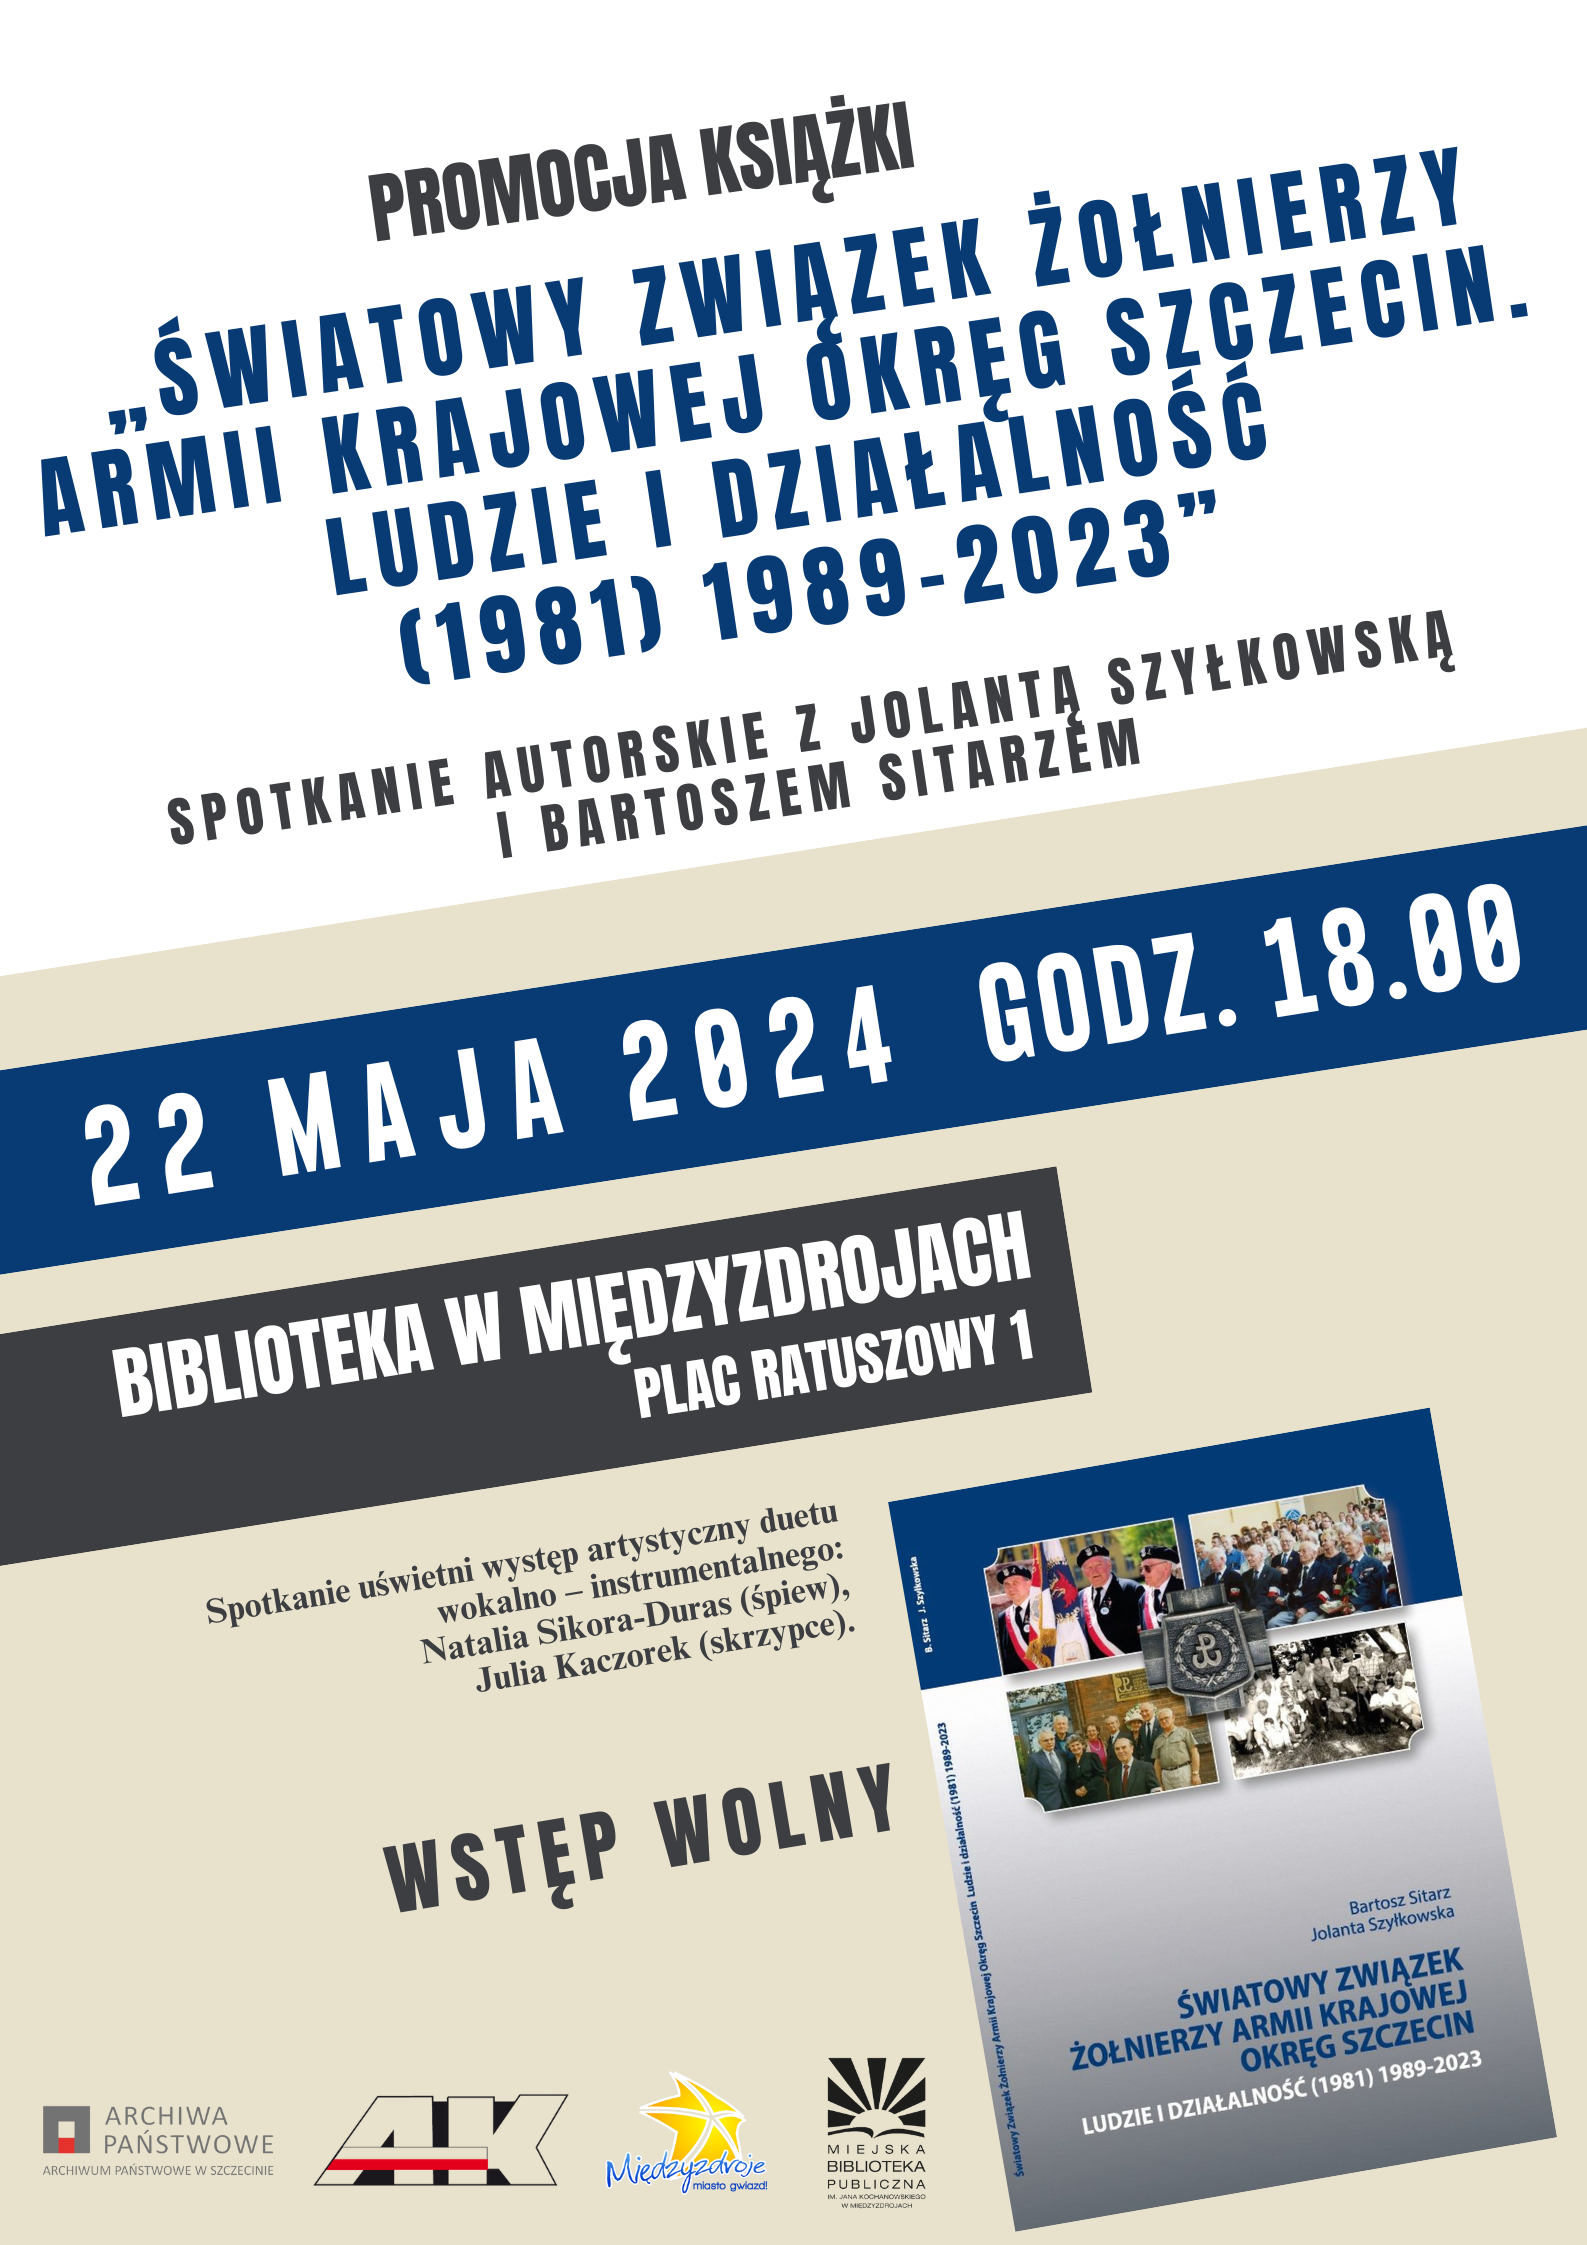 Promocja książki i spotkanie autorskie z Jolantą Szyłkowską i Bartoszem Sitarzem 22 maja 2024 r. - zapowiedź